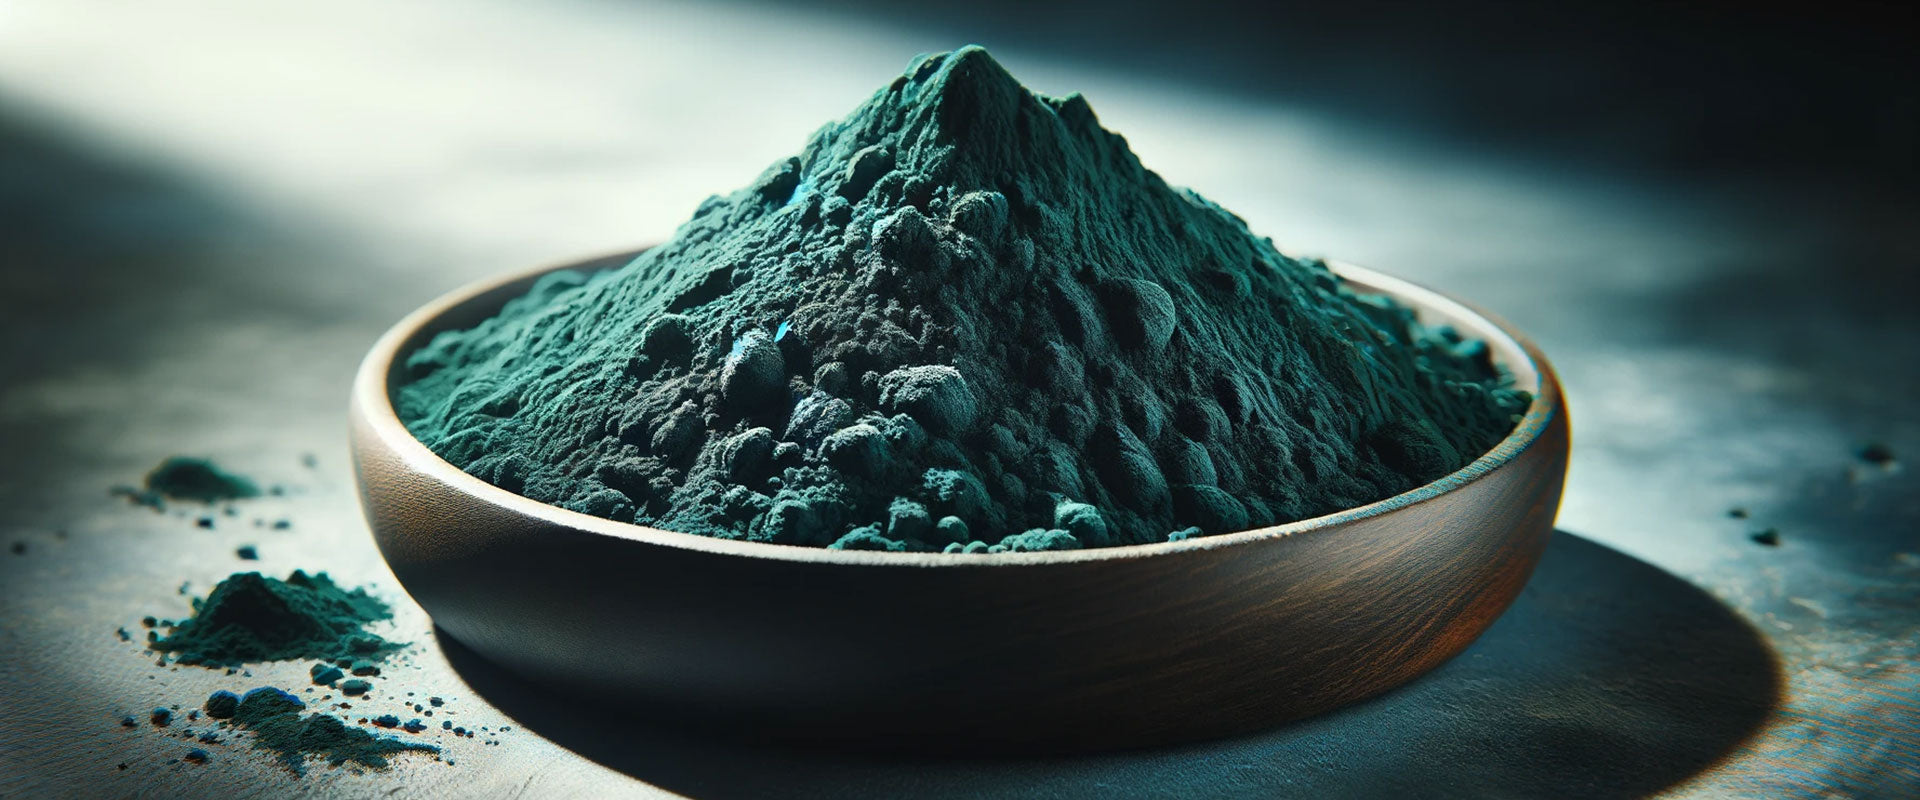 spirulina algae for natural blue green food coloring